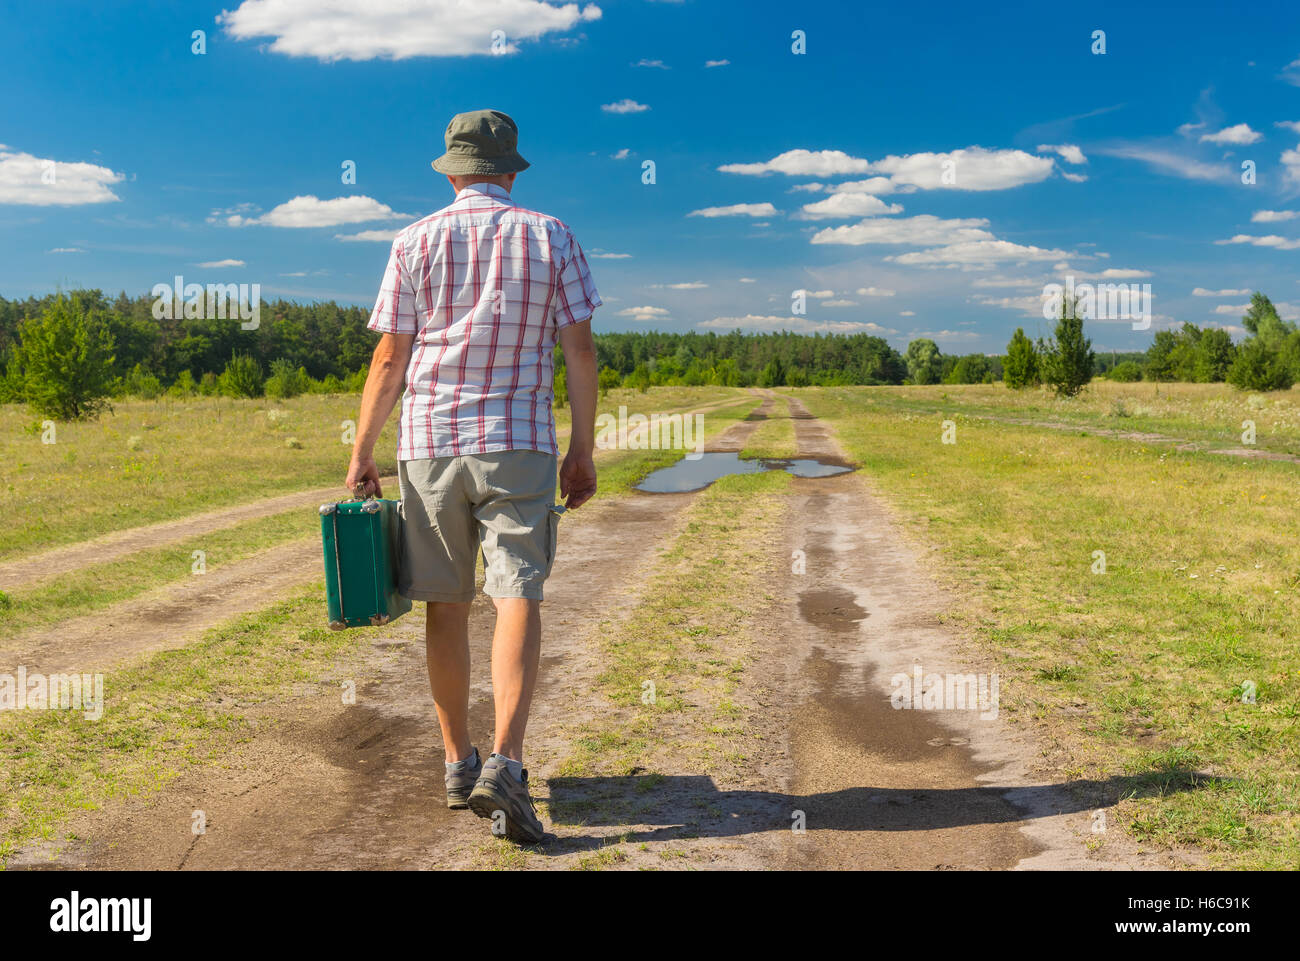 Hombre maduro vistiendo anteojeras, camisa y sombrero caminando sobre un verano country road con maleta verde Foto de stock